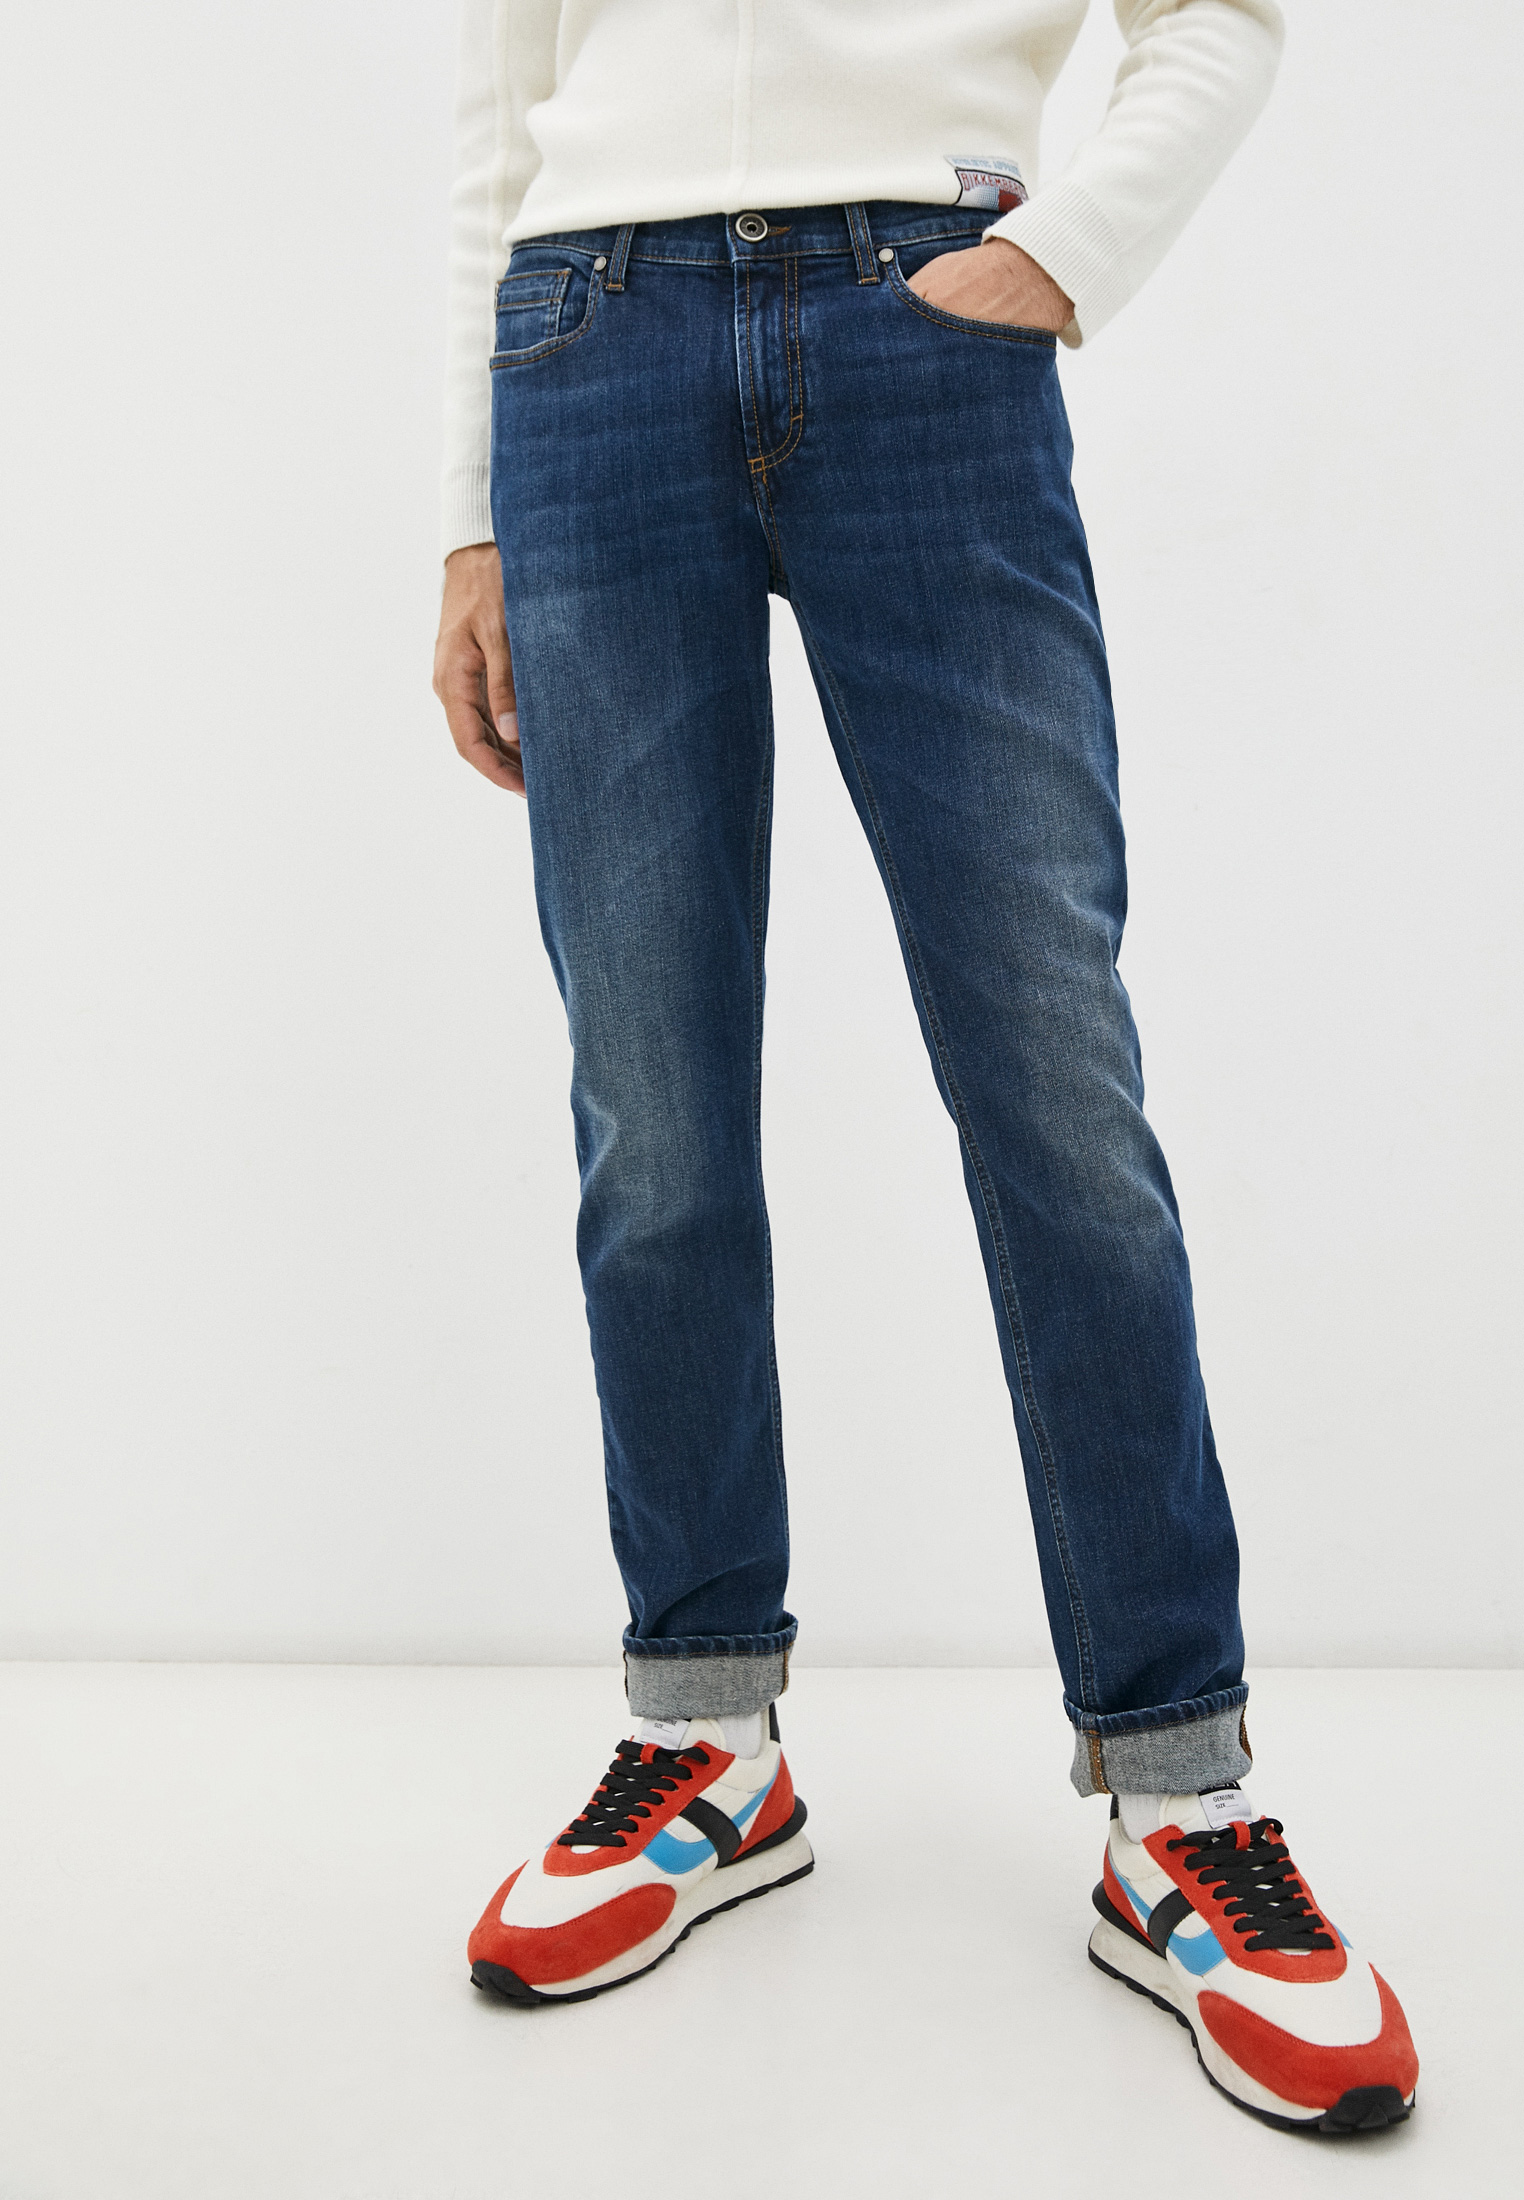 Мужские прямые джинсы Bikkembergs (Биккембергс) C Q 002 80 S 2932: изображение 1